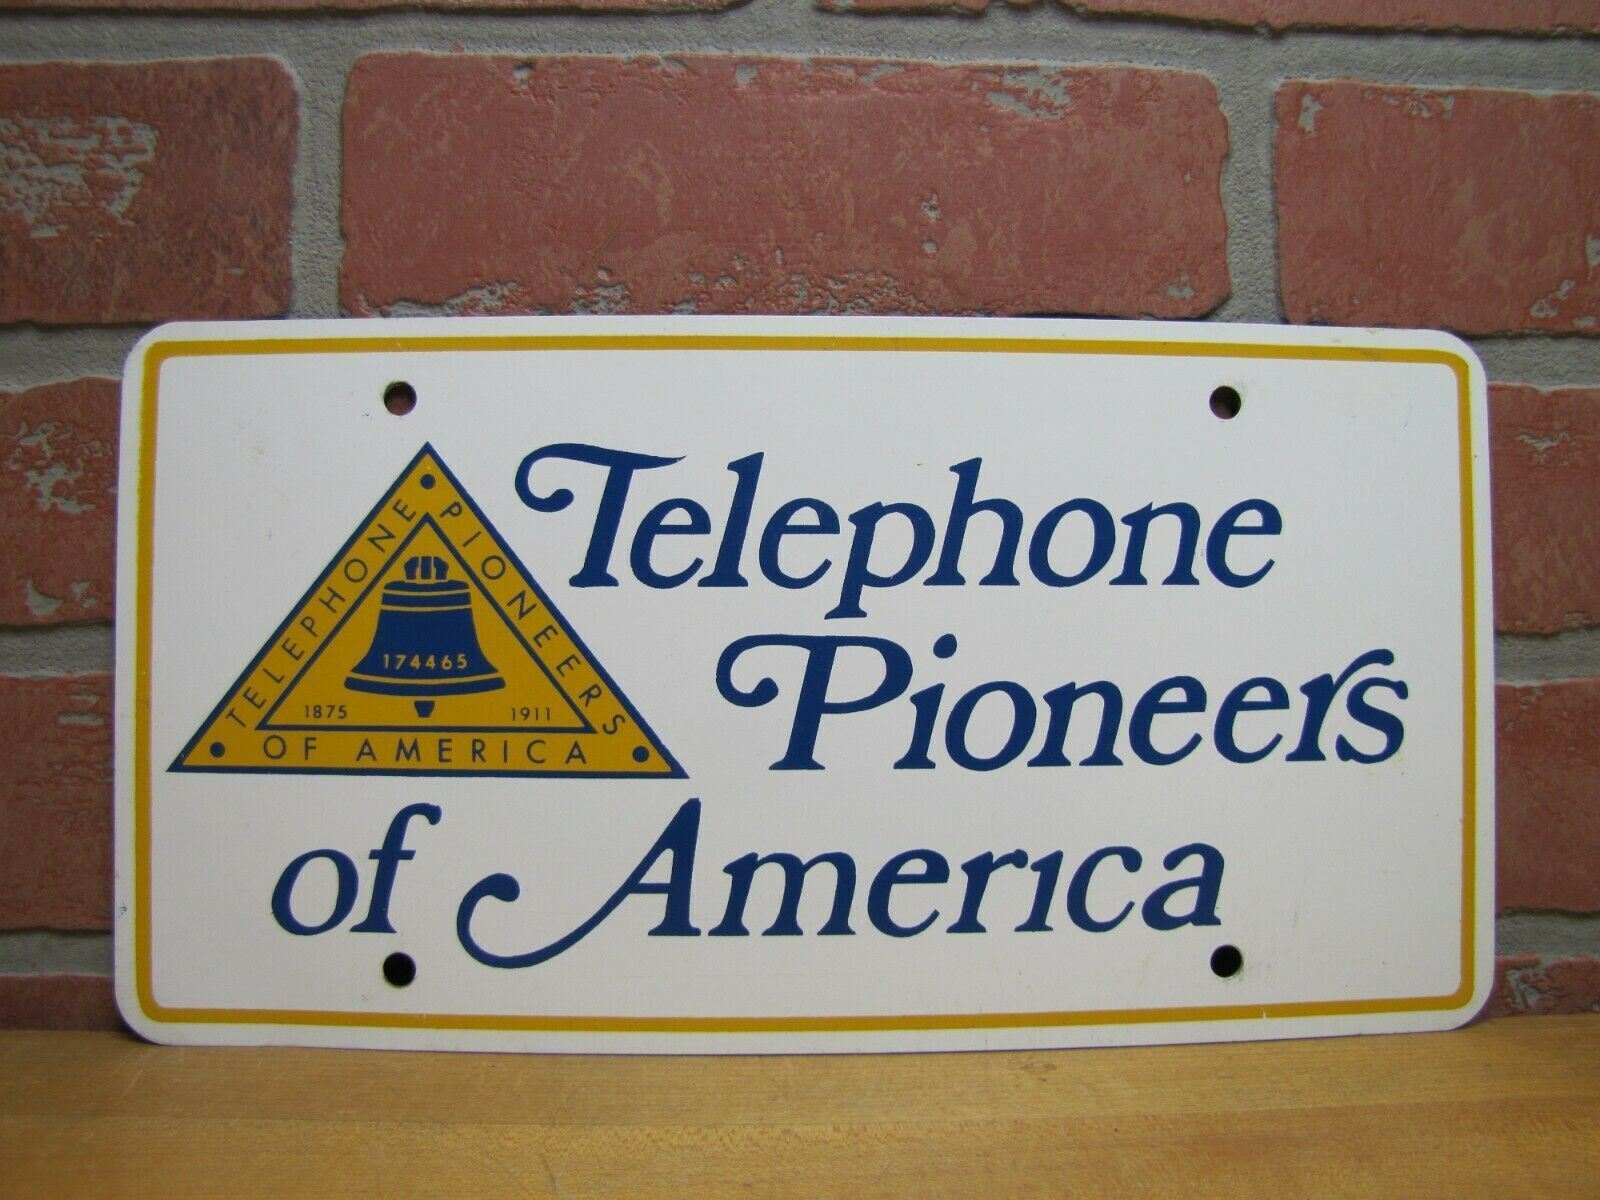 TELEPHONE PIONEERS OF AMERICA 1875 1911 Vantiy Advertising License Plate Sign